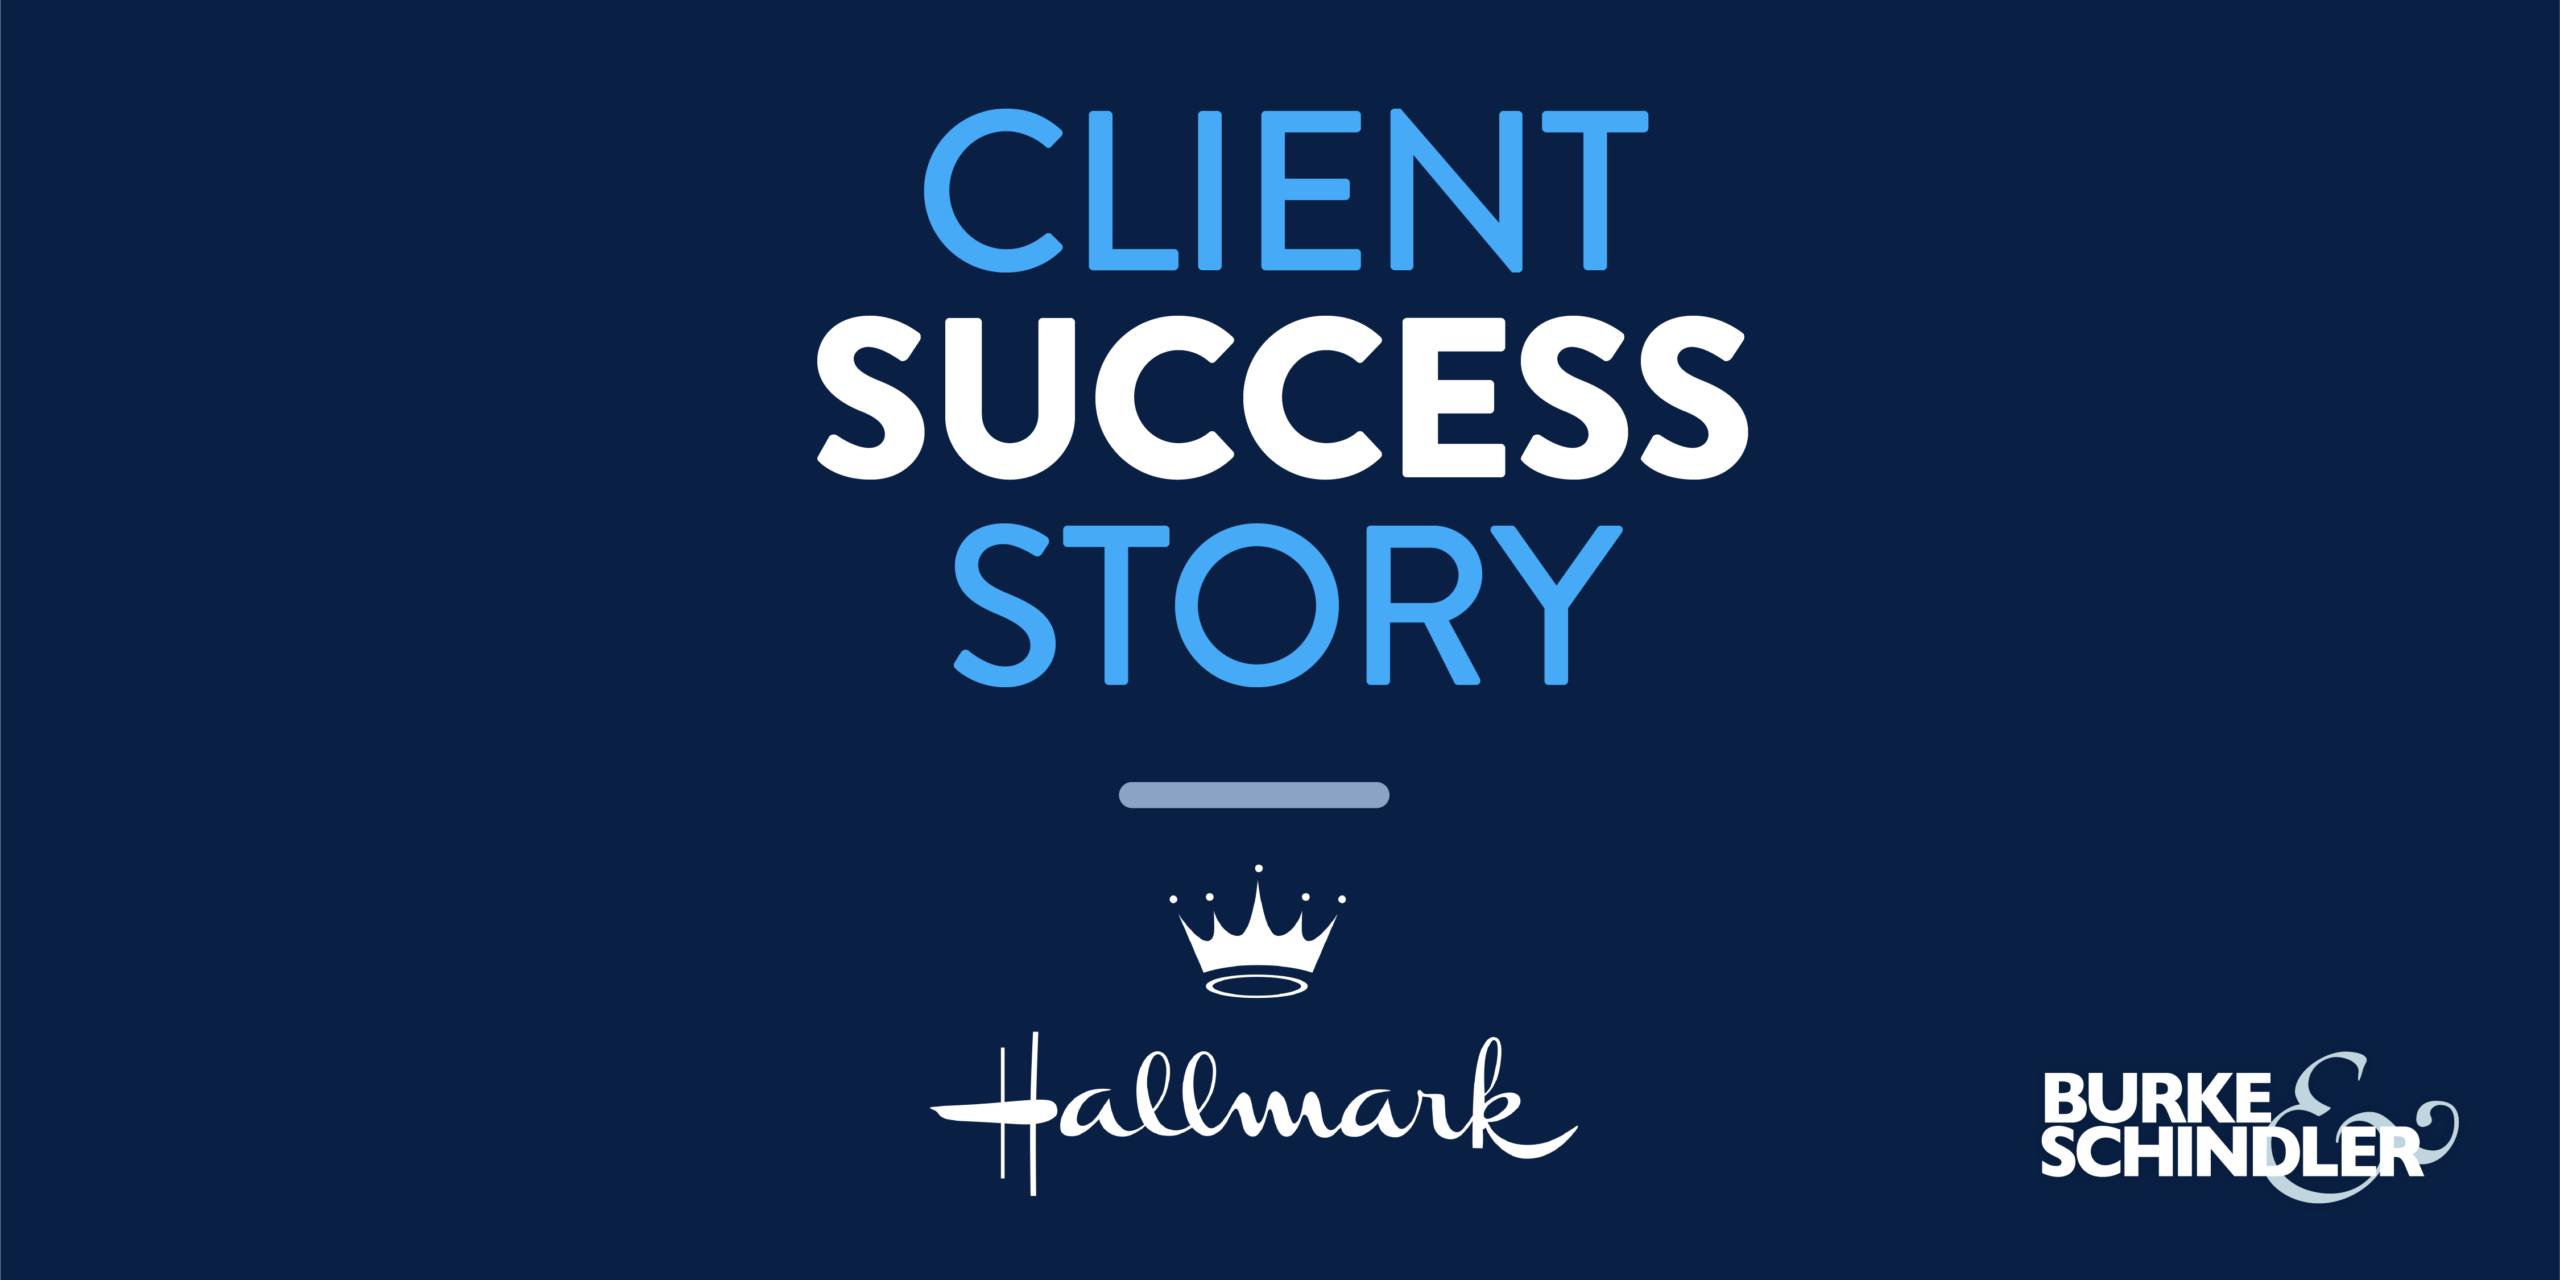 Client Success Story